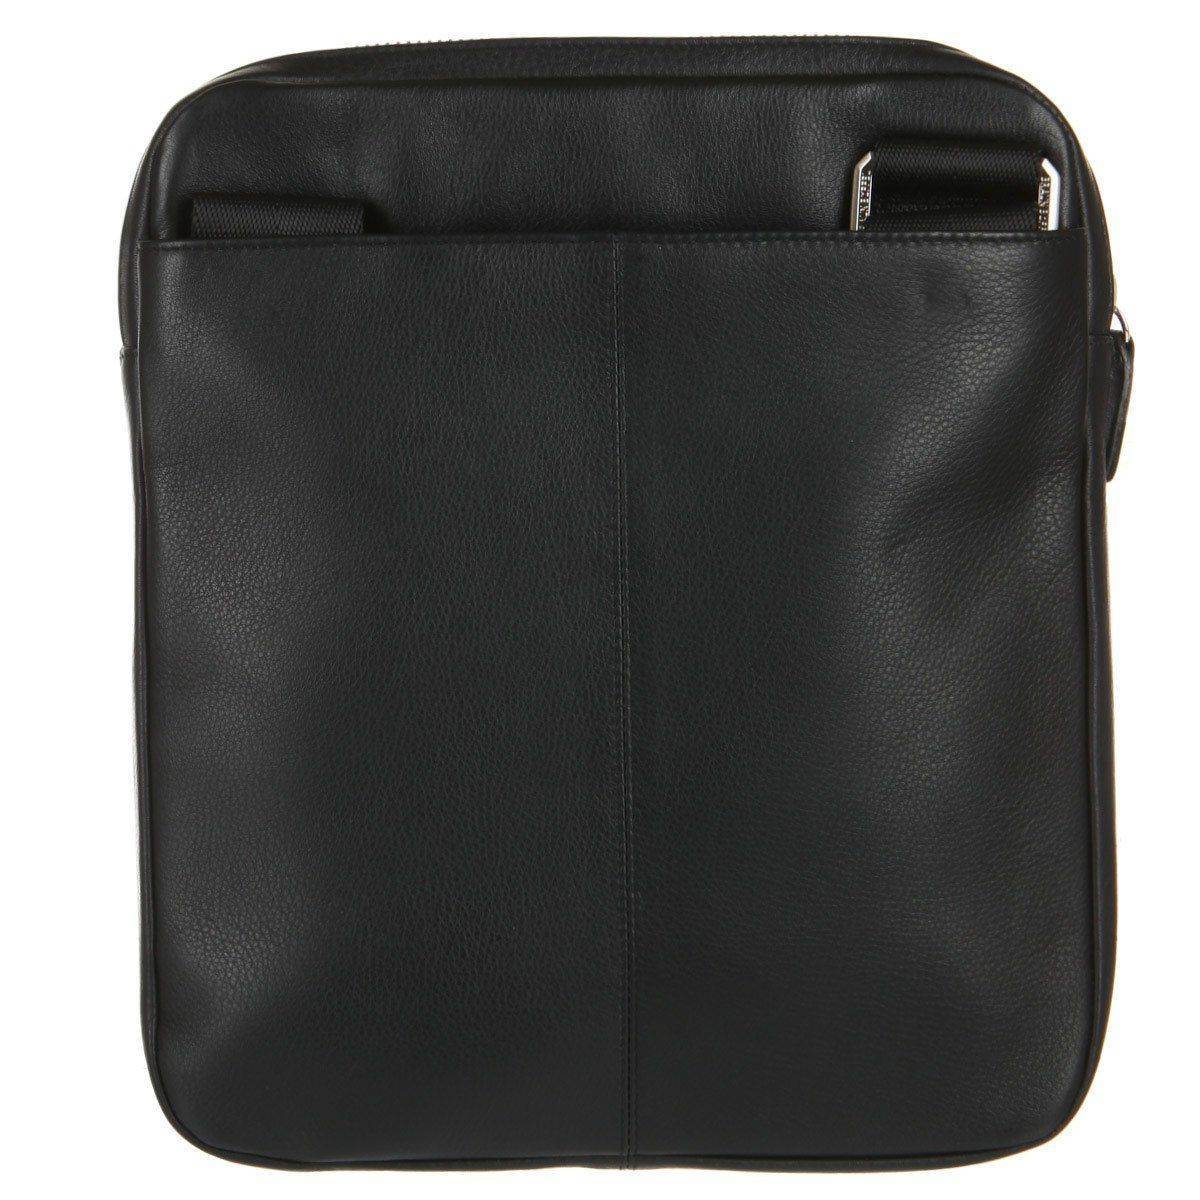 Сумка репортер Braun Buffel GOLF Shoulder Bag M 92562, цвет черный, размер ONE SIZE - фото 3